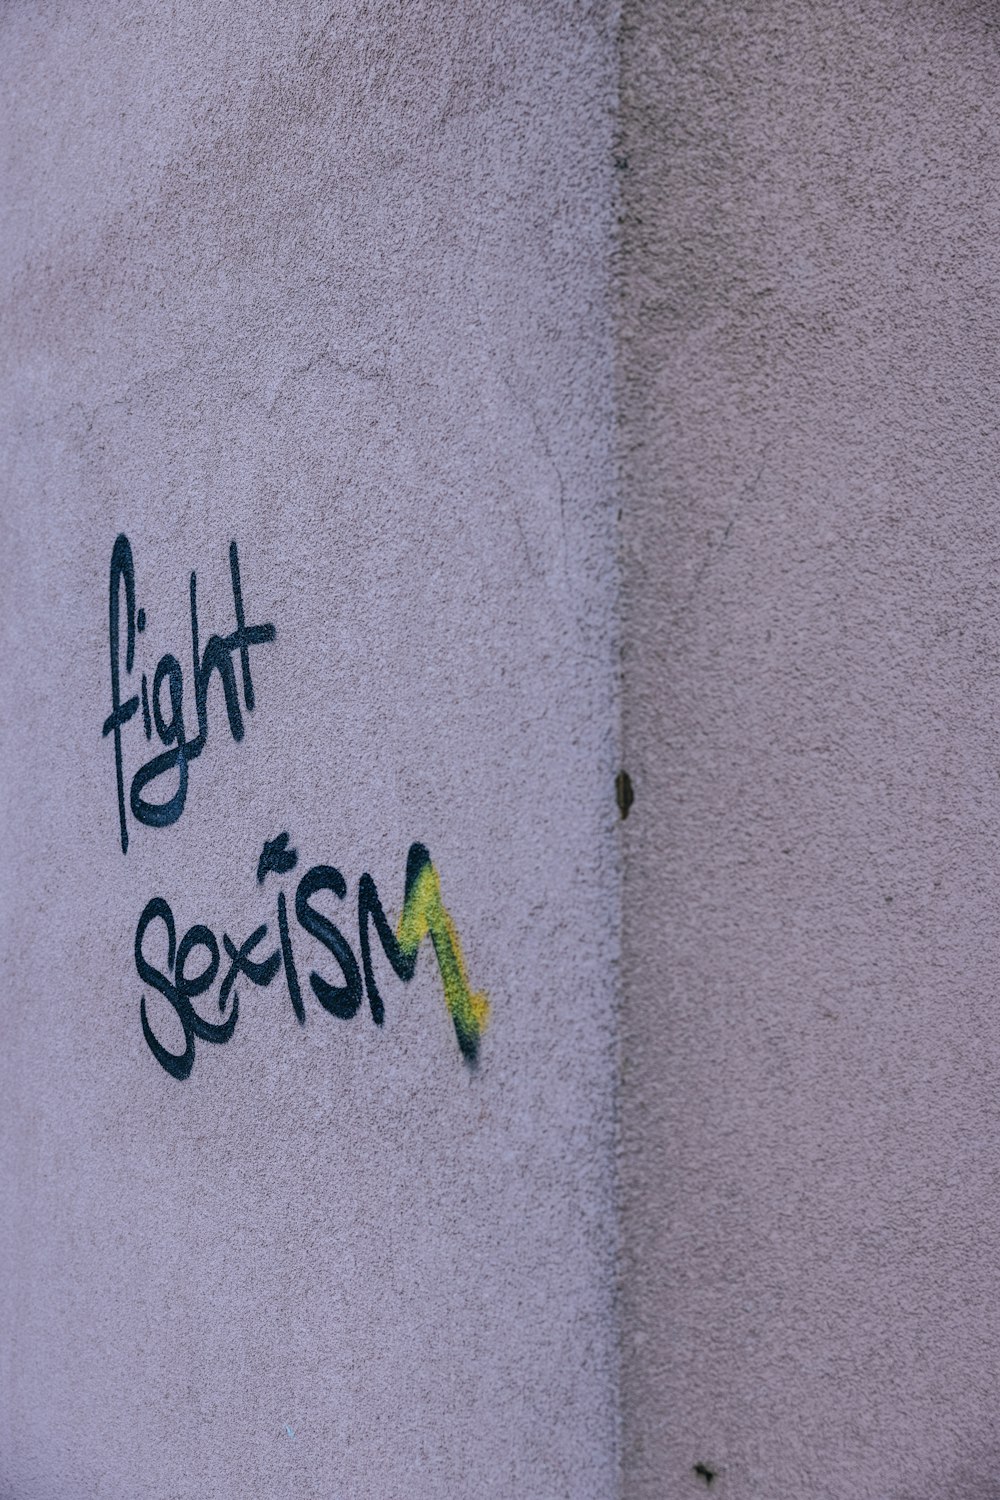 Graffiti en el costado de un edificio que dice luchar contra el sexismo